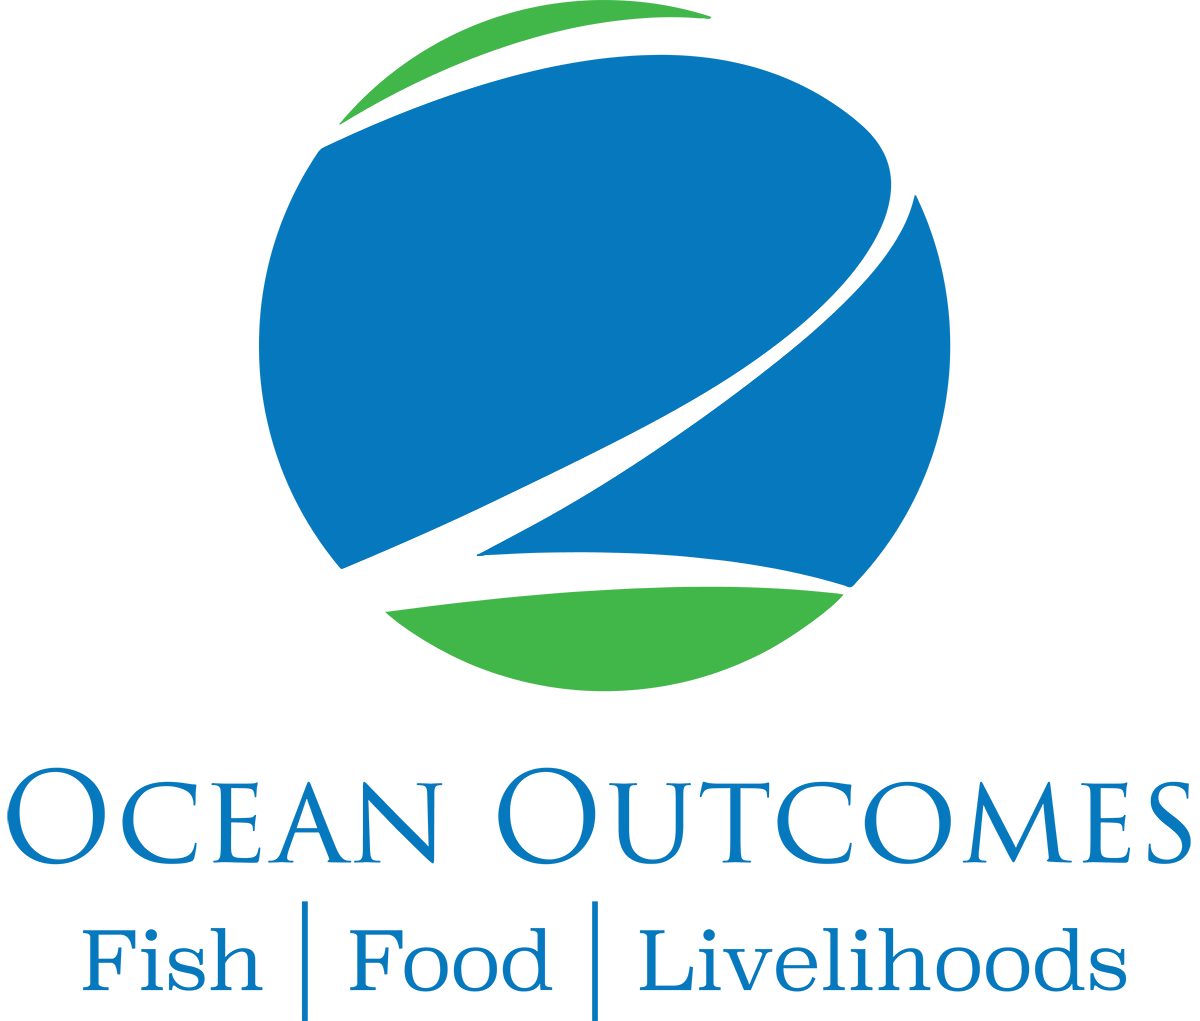 ocean outcomes